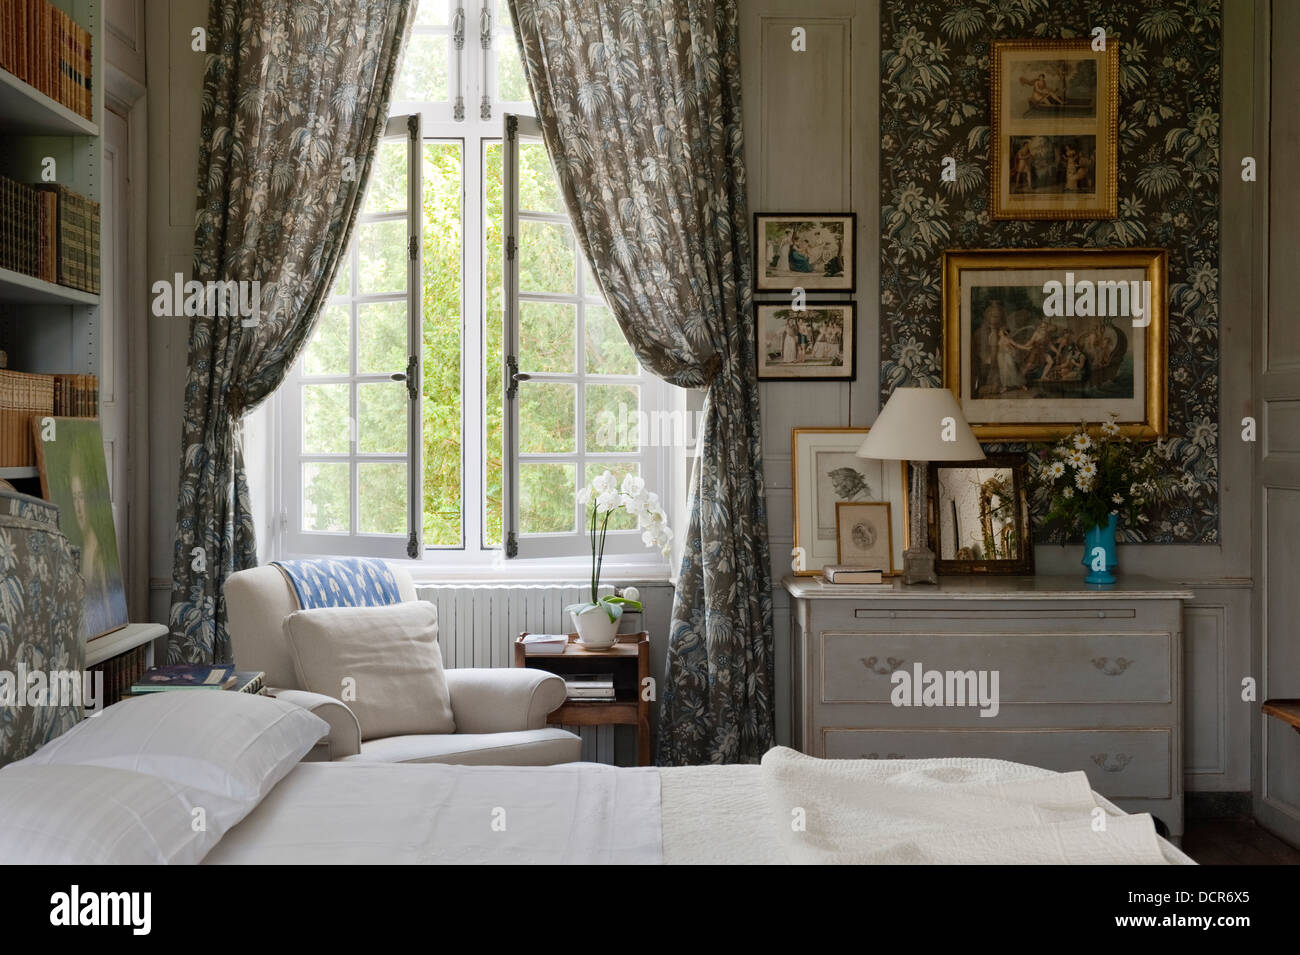 Tessuto Marvic pareti rivestite con abbinamento di tende in camera con eleganti mobili in francese Foto Stock